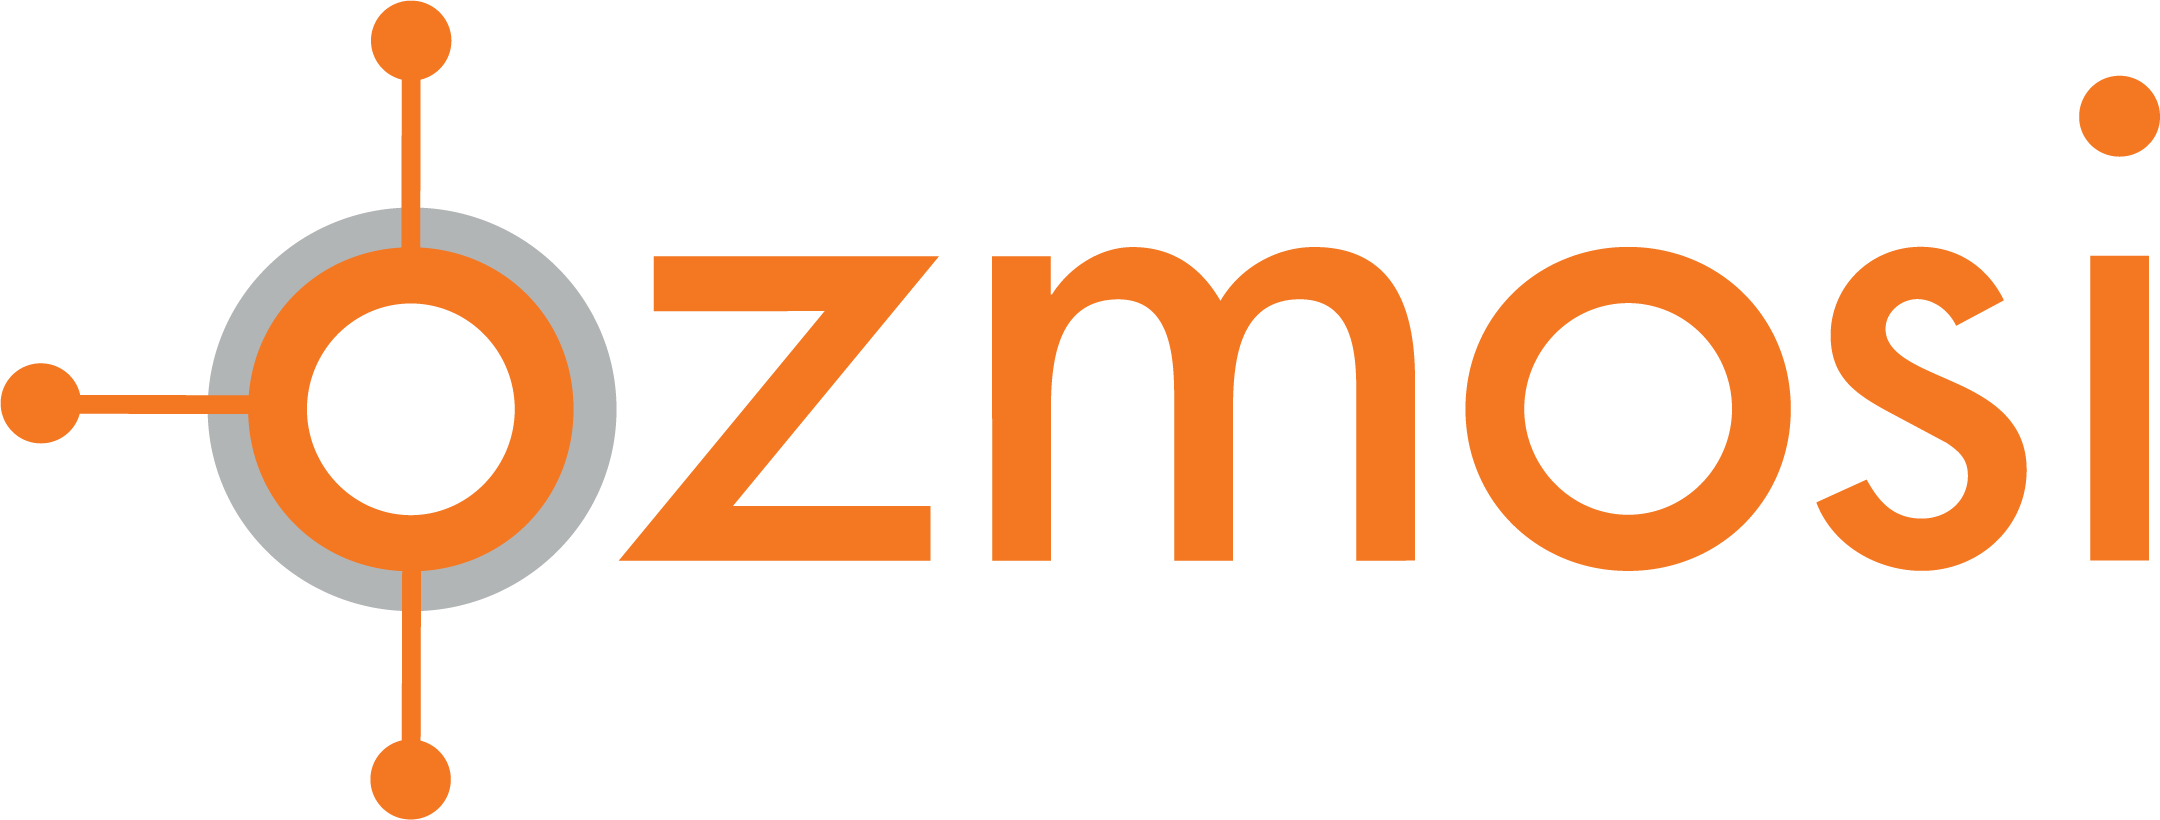 Ozmosi large logo